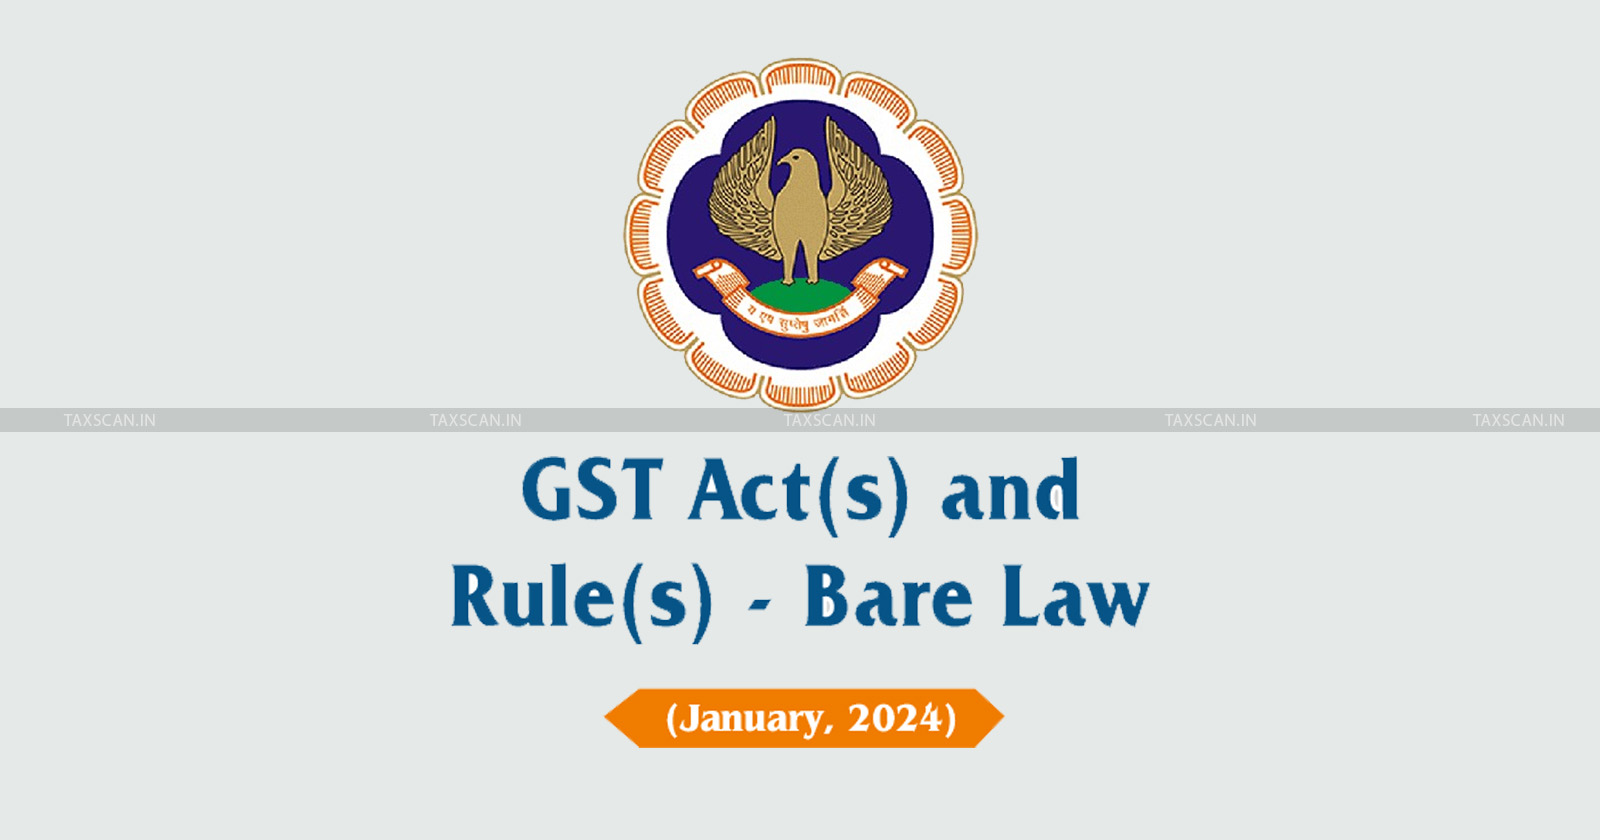 GST - ICAI - ICAI Bare Law publication - Latest GST regulations - GST regulations 2024 - GST Act amendments 2024 - taxscan